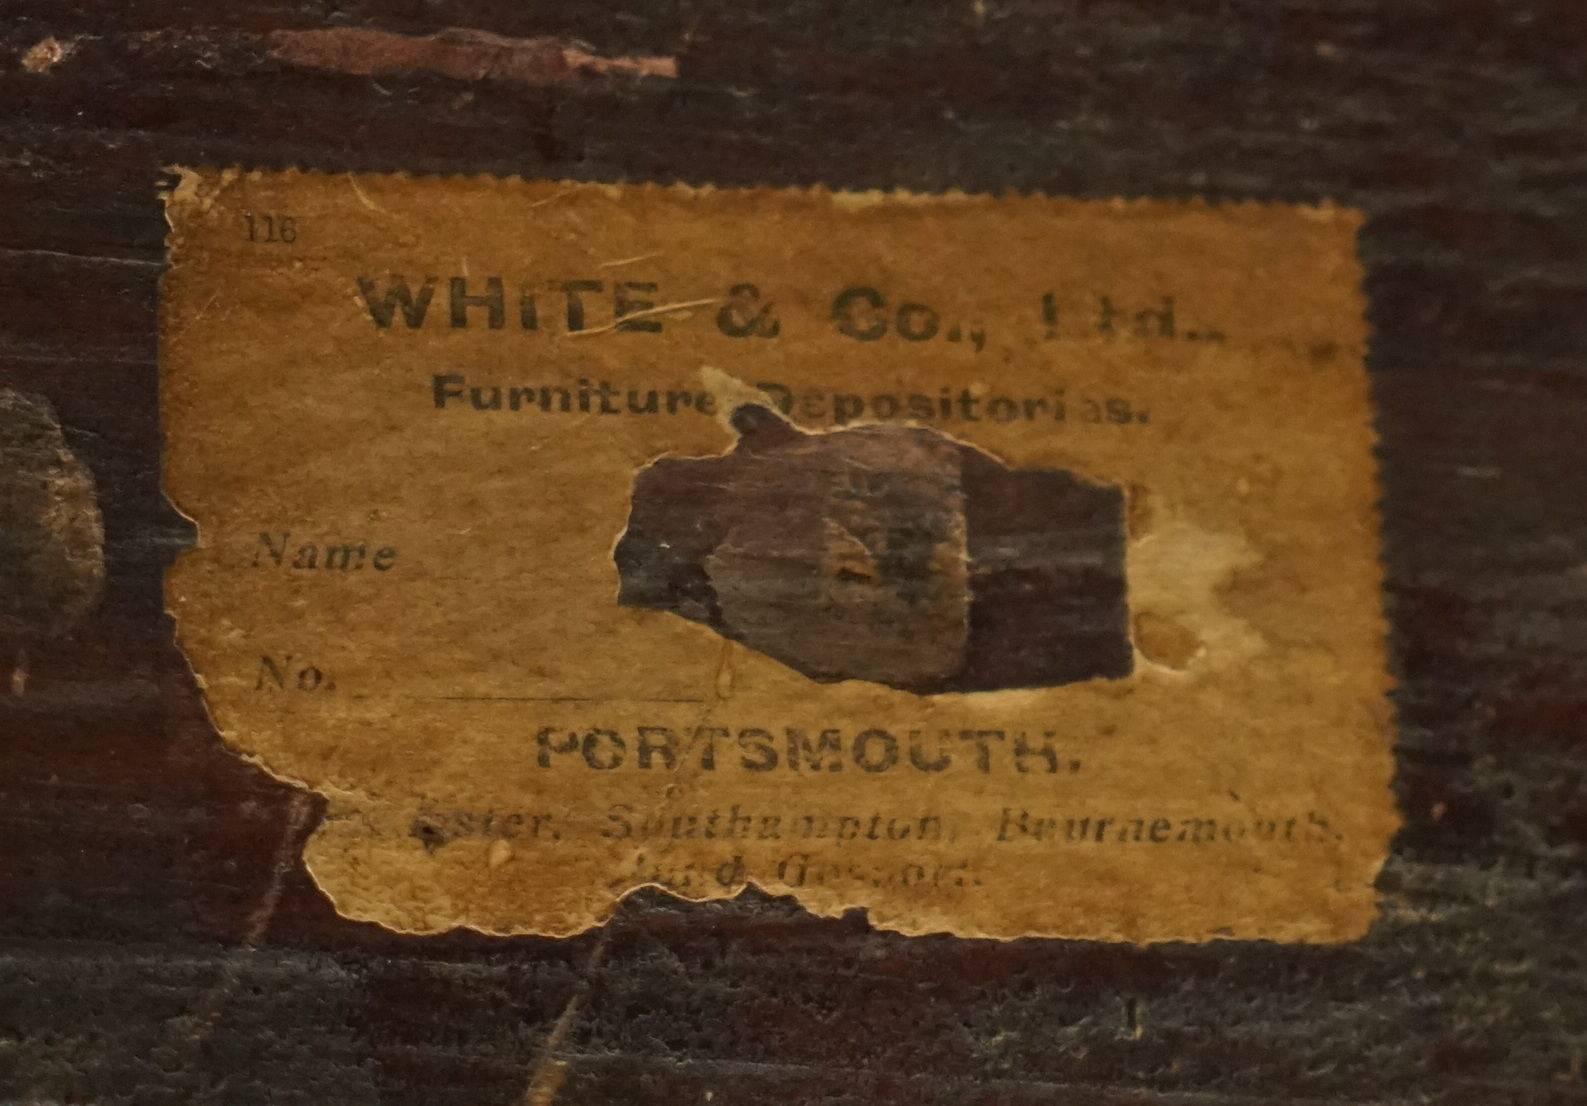 Laiton Rare commode de campagne de 1870 avec étiquettes originales en papier White & Co Ltd